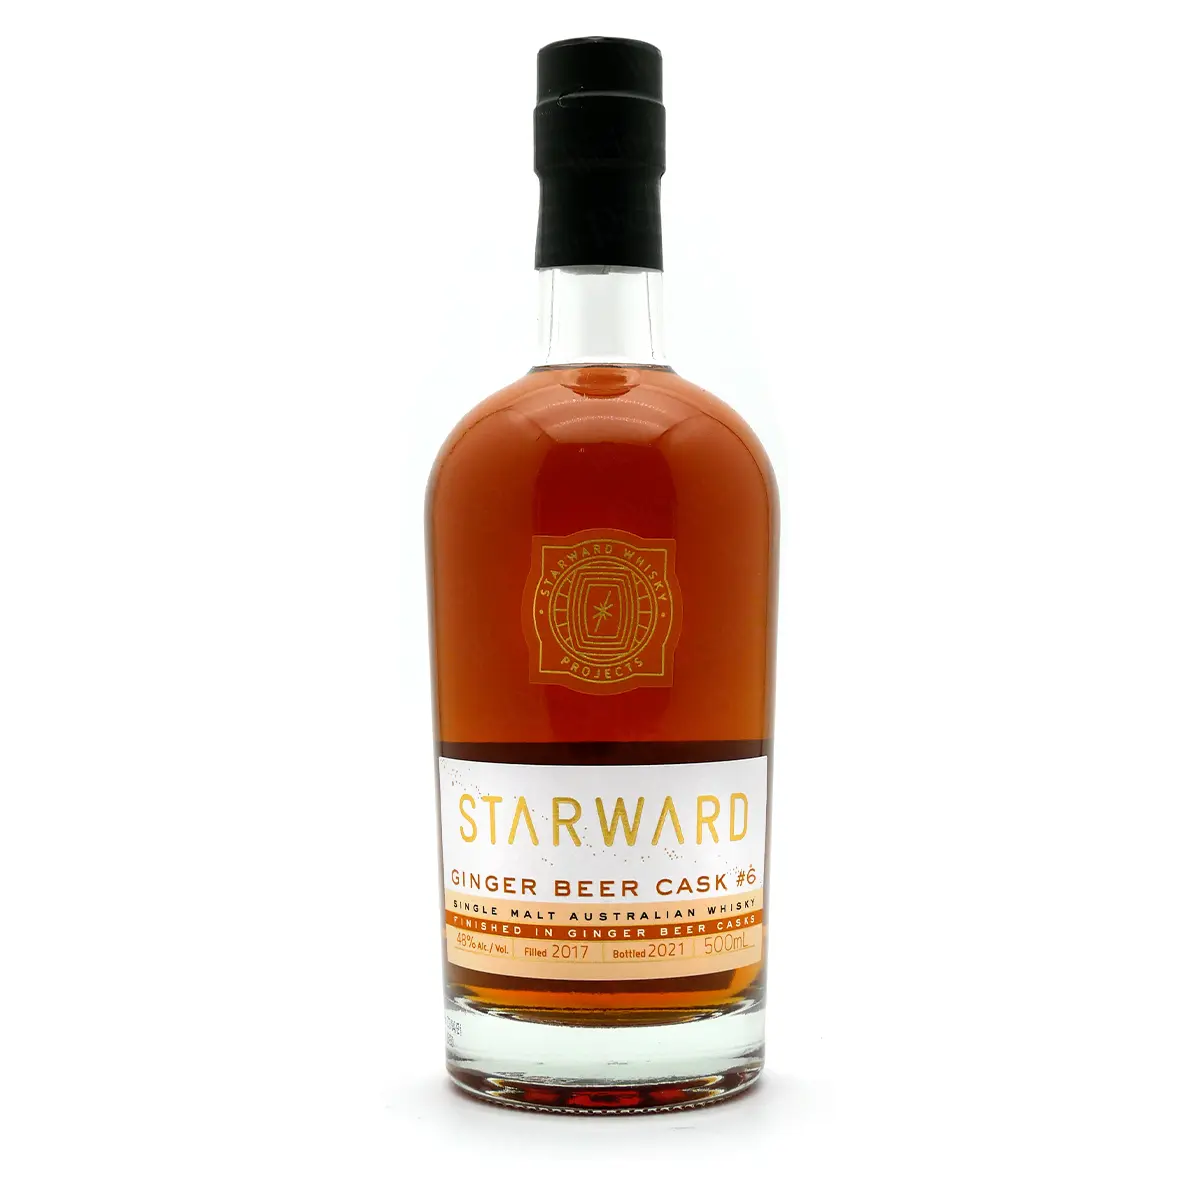 Starward GINGER BEER CASK Single Malt Australian Whisky